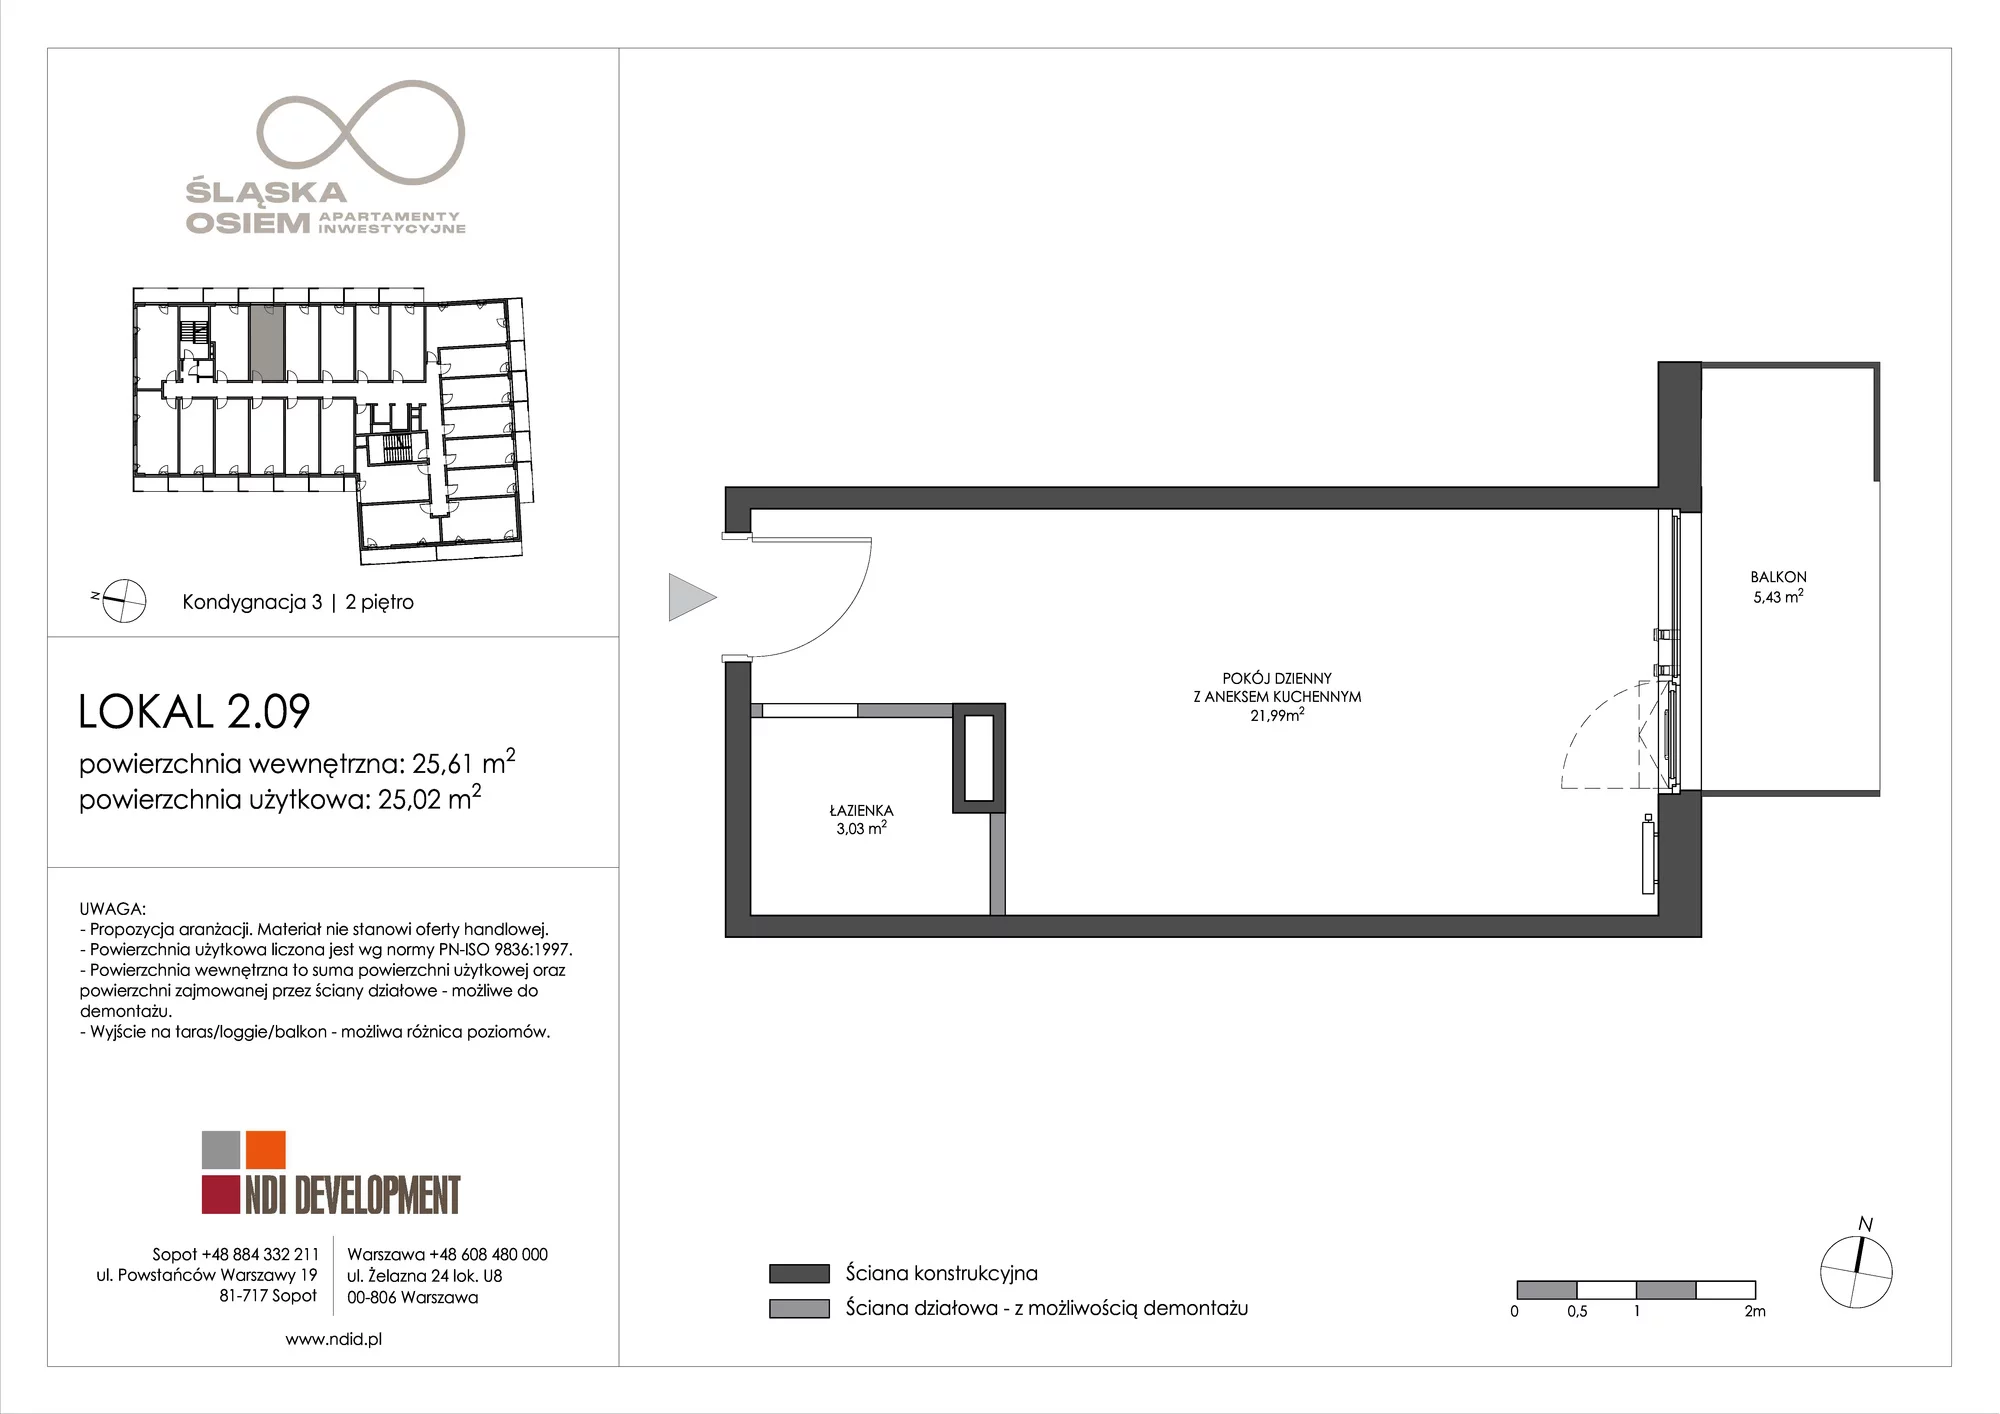 Apartament inwestycyjny 25,61 m², piętro 2, oferta nr 2.09, Śląska Osiem, Gdańsk, Przymorze, ul. Śląska 8